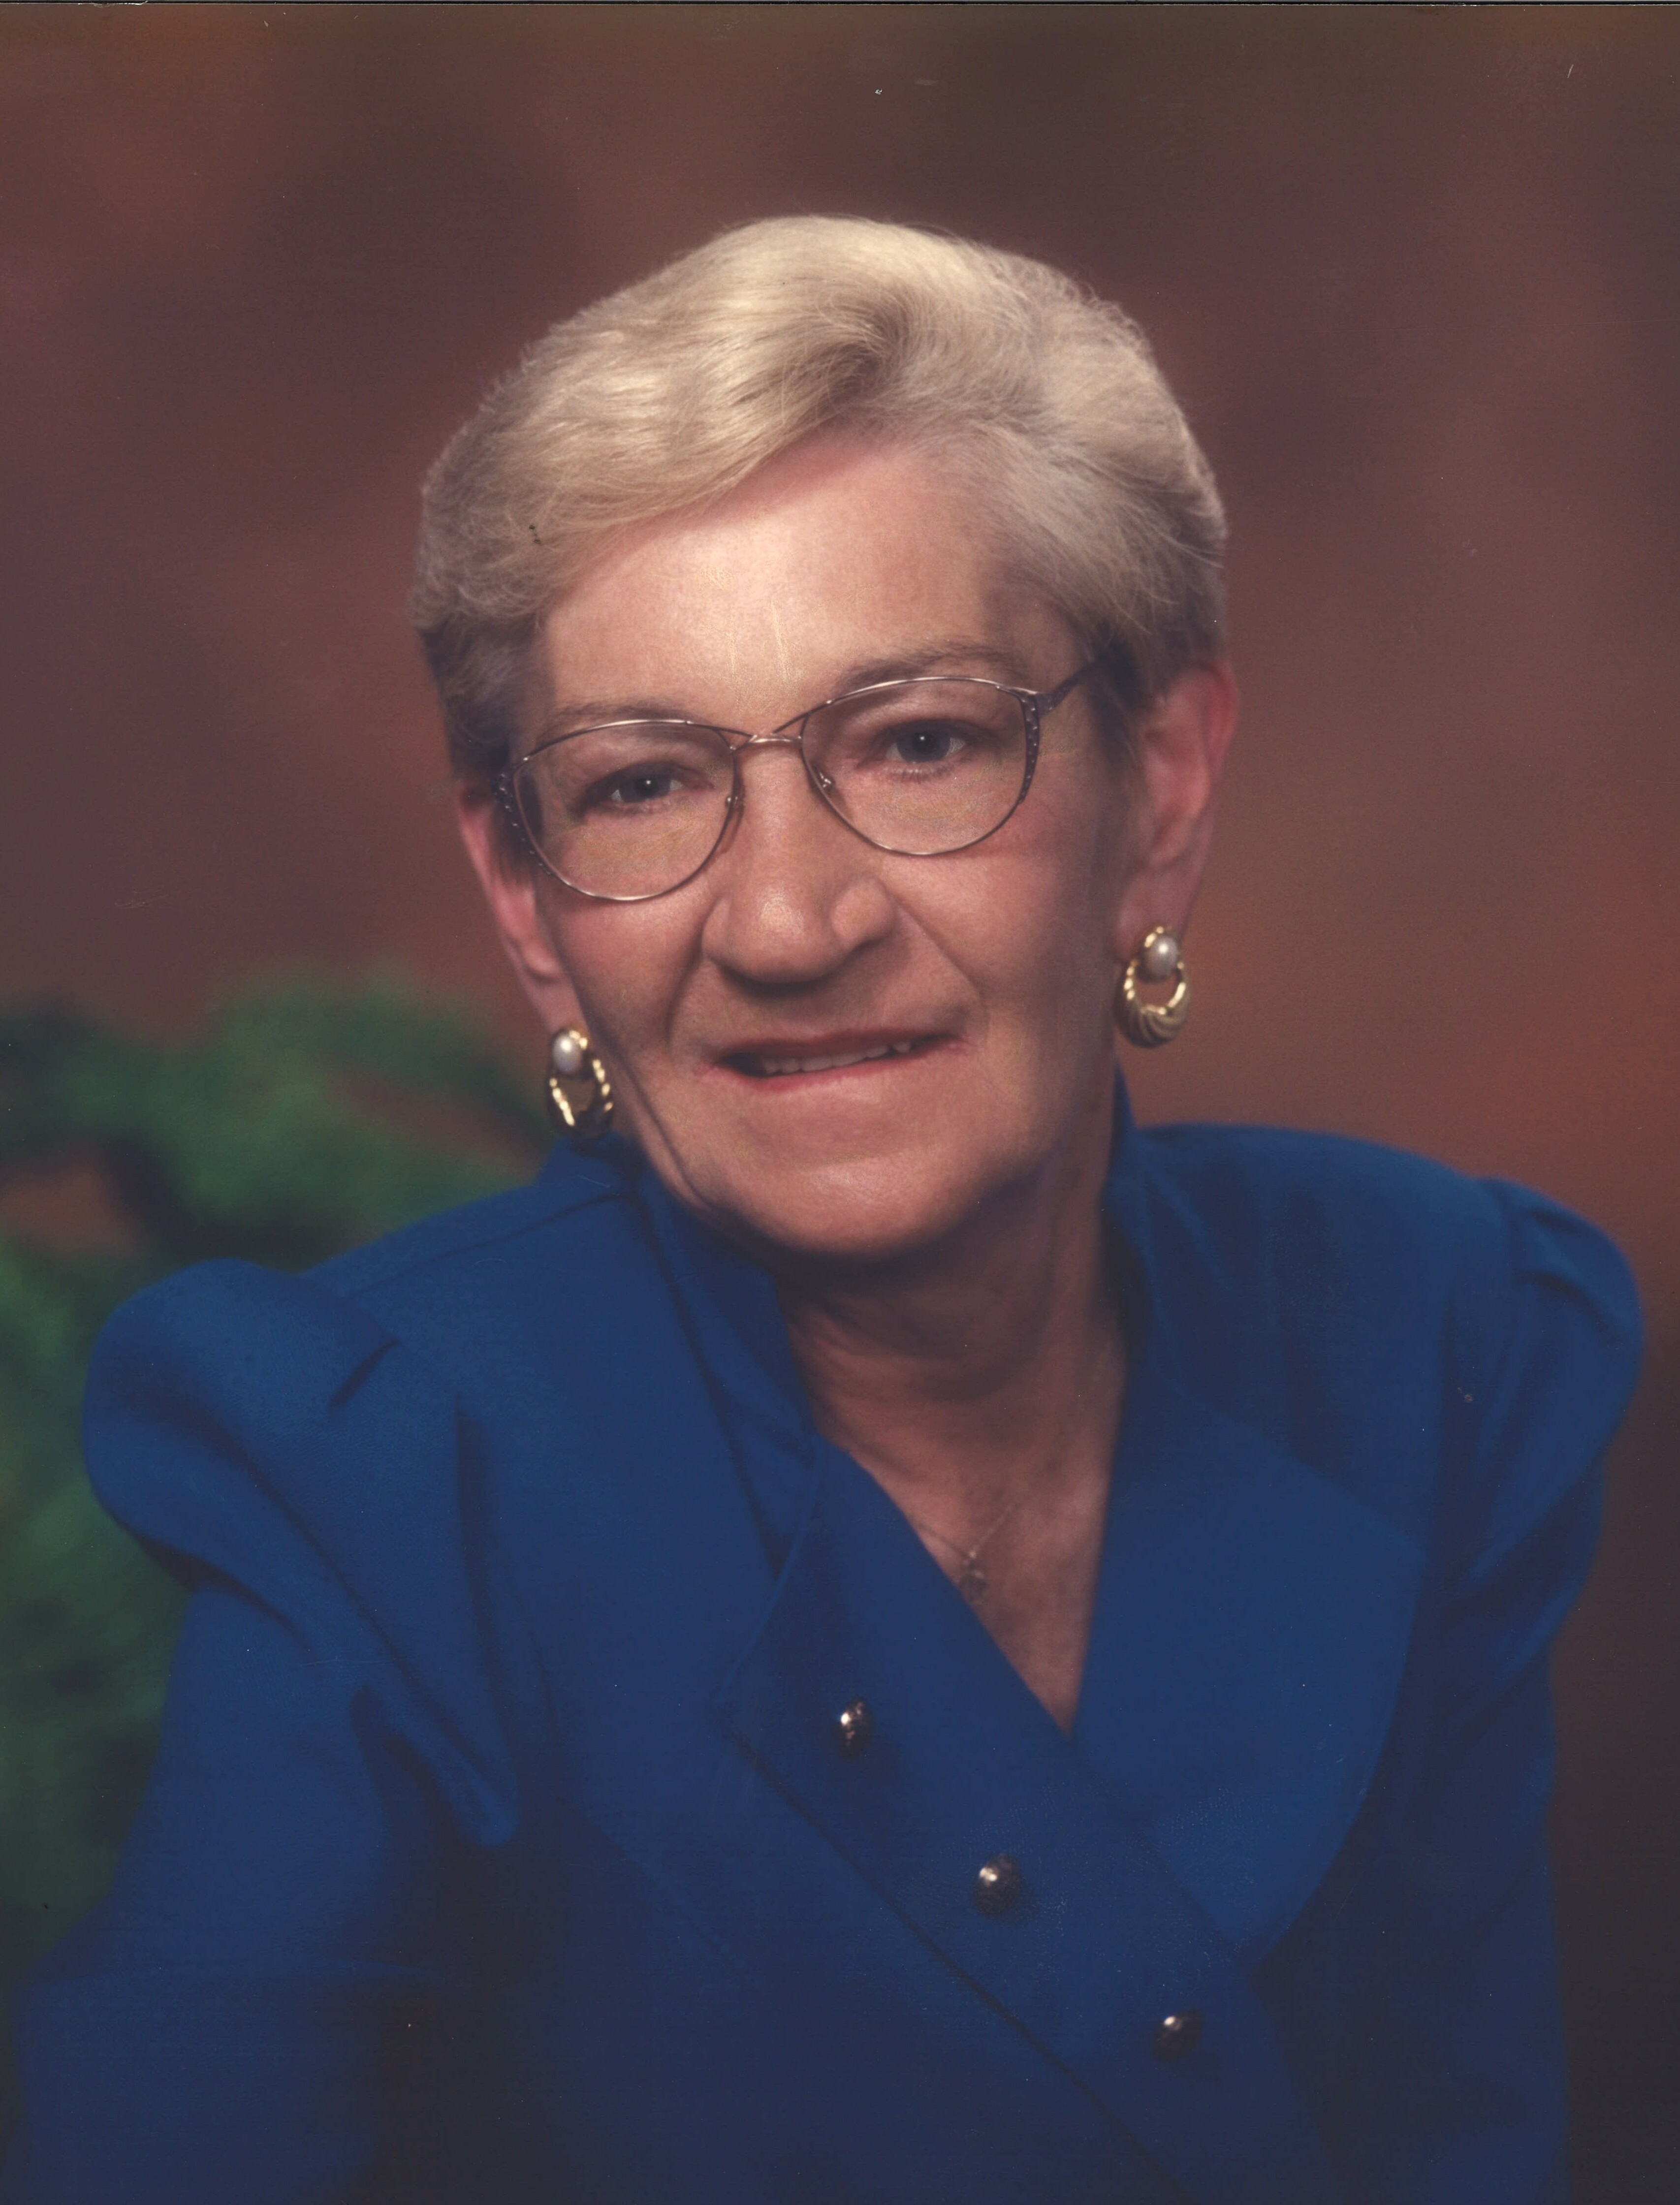 Norma Hoffman